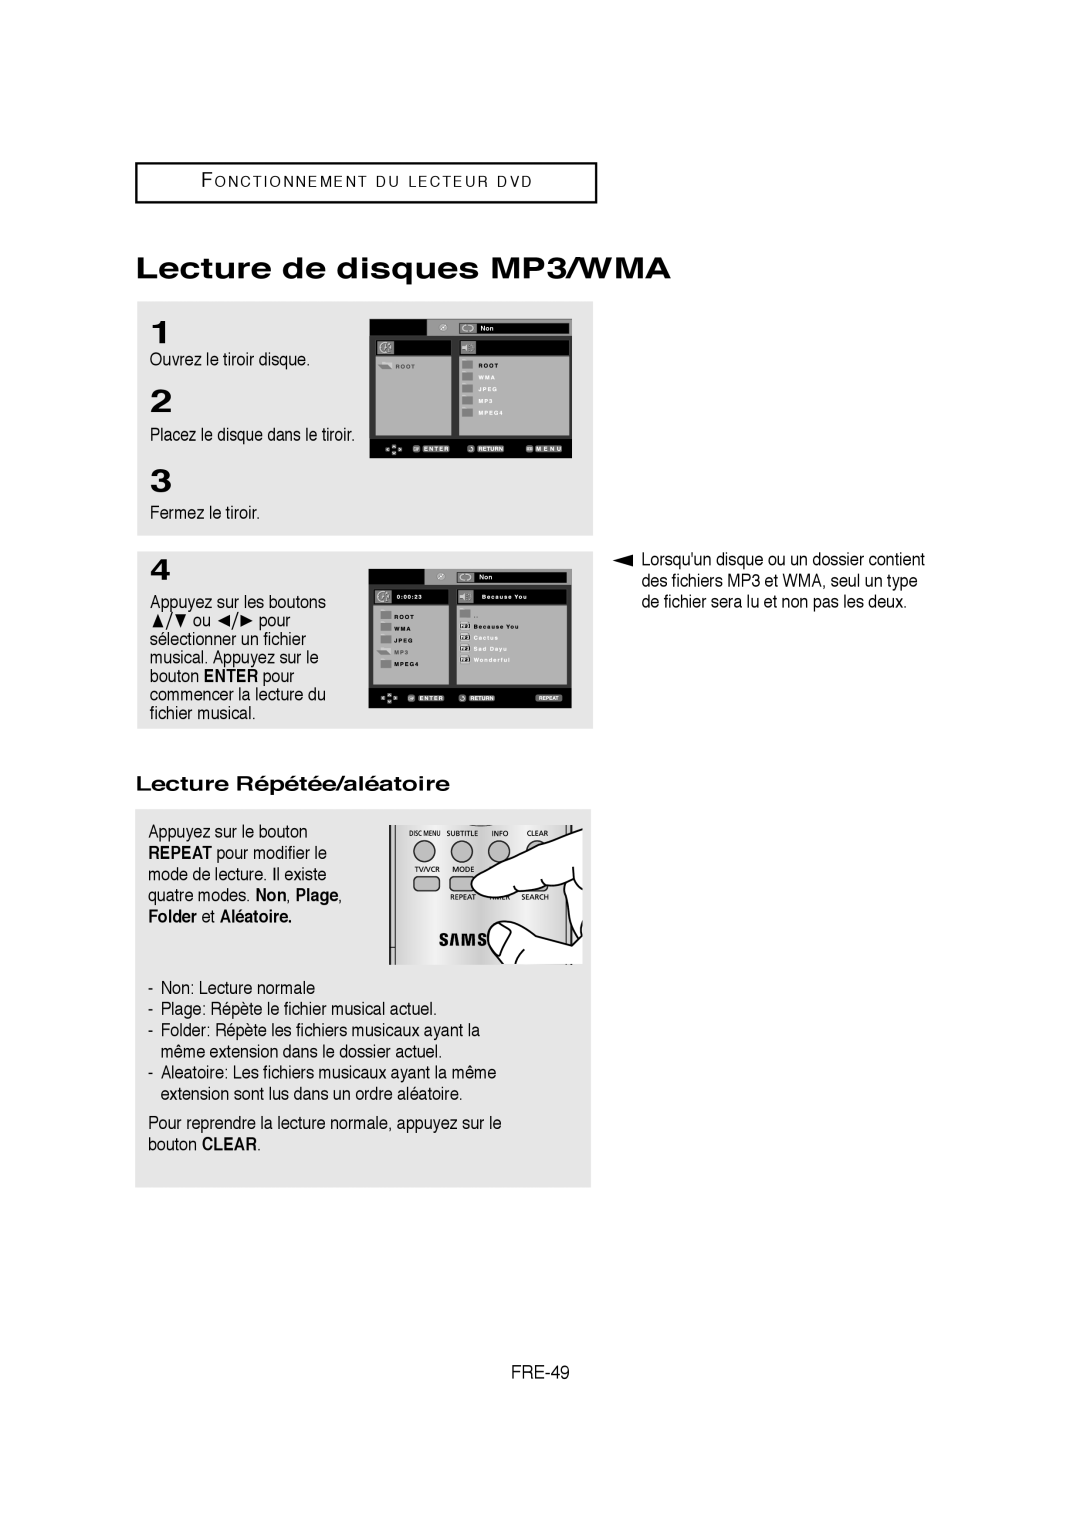 Samsung AK68-01304A, V6700-XAC, 20070205090323359 instruction manual Lecture de disques MP3/WMA, Lecture Répétée/aléatoire 